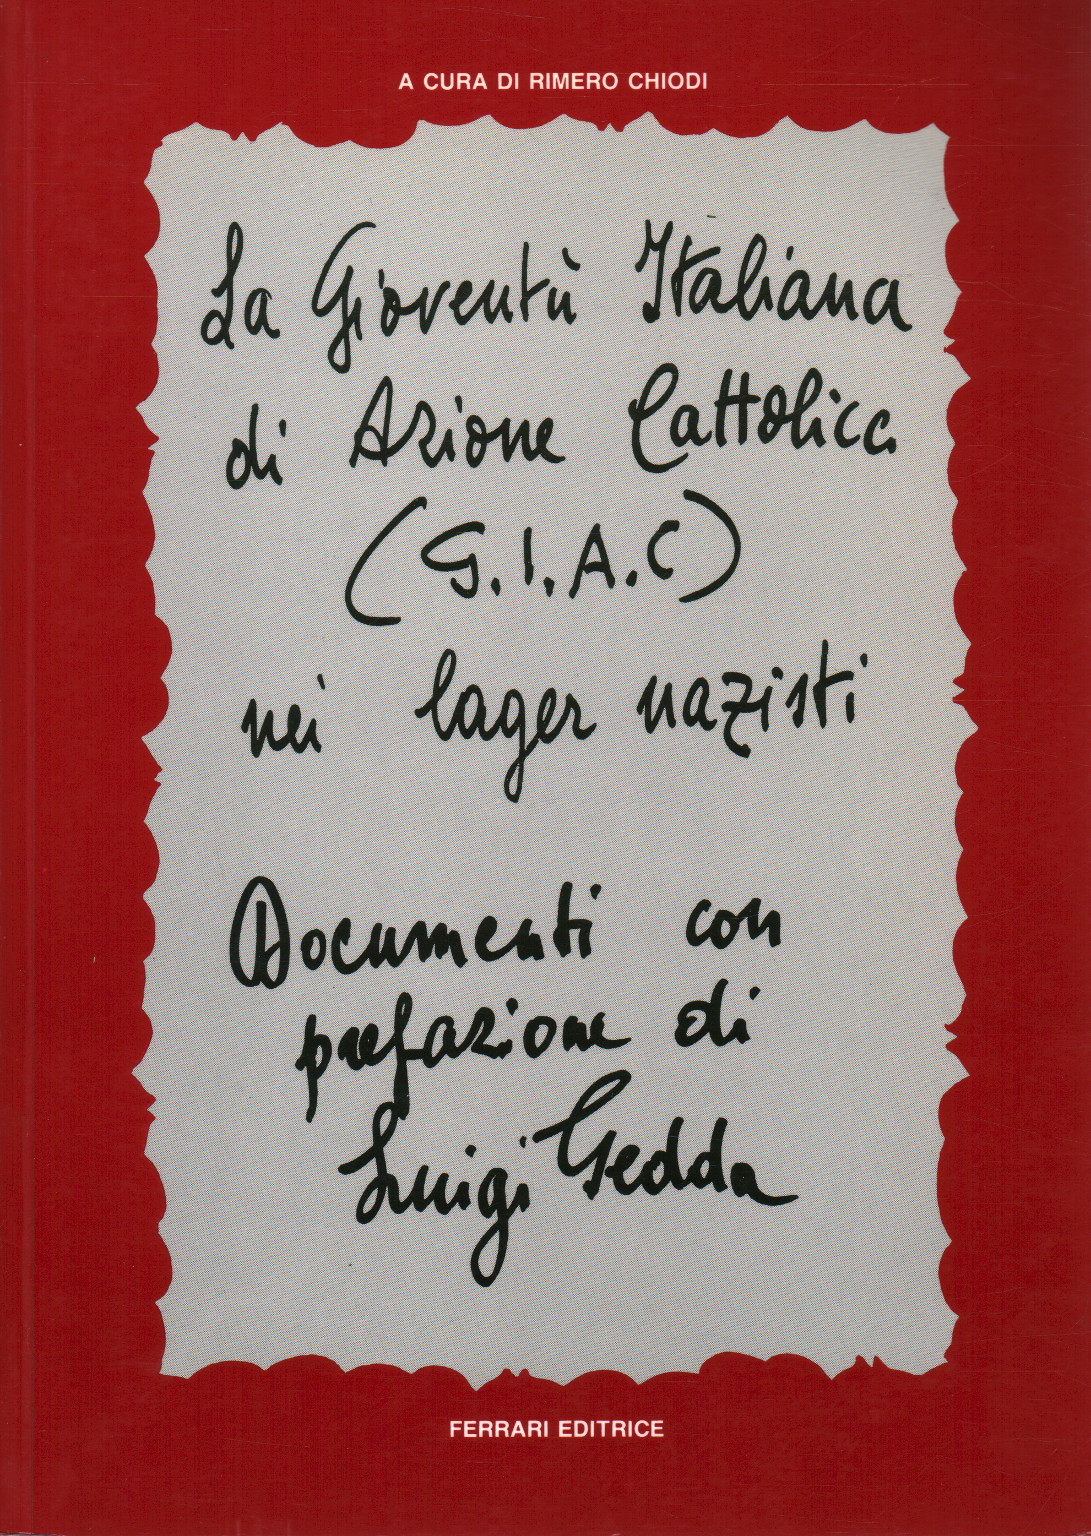 G. I. A. C. italien de la jeunesse de l'Action catholique, s.un.